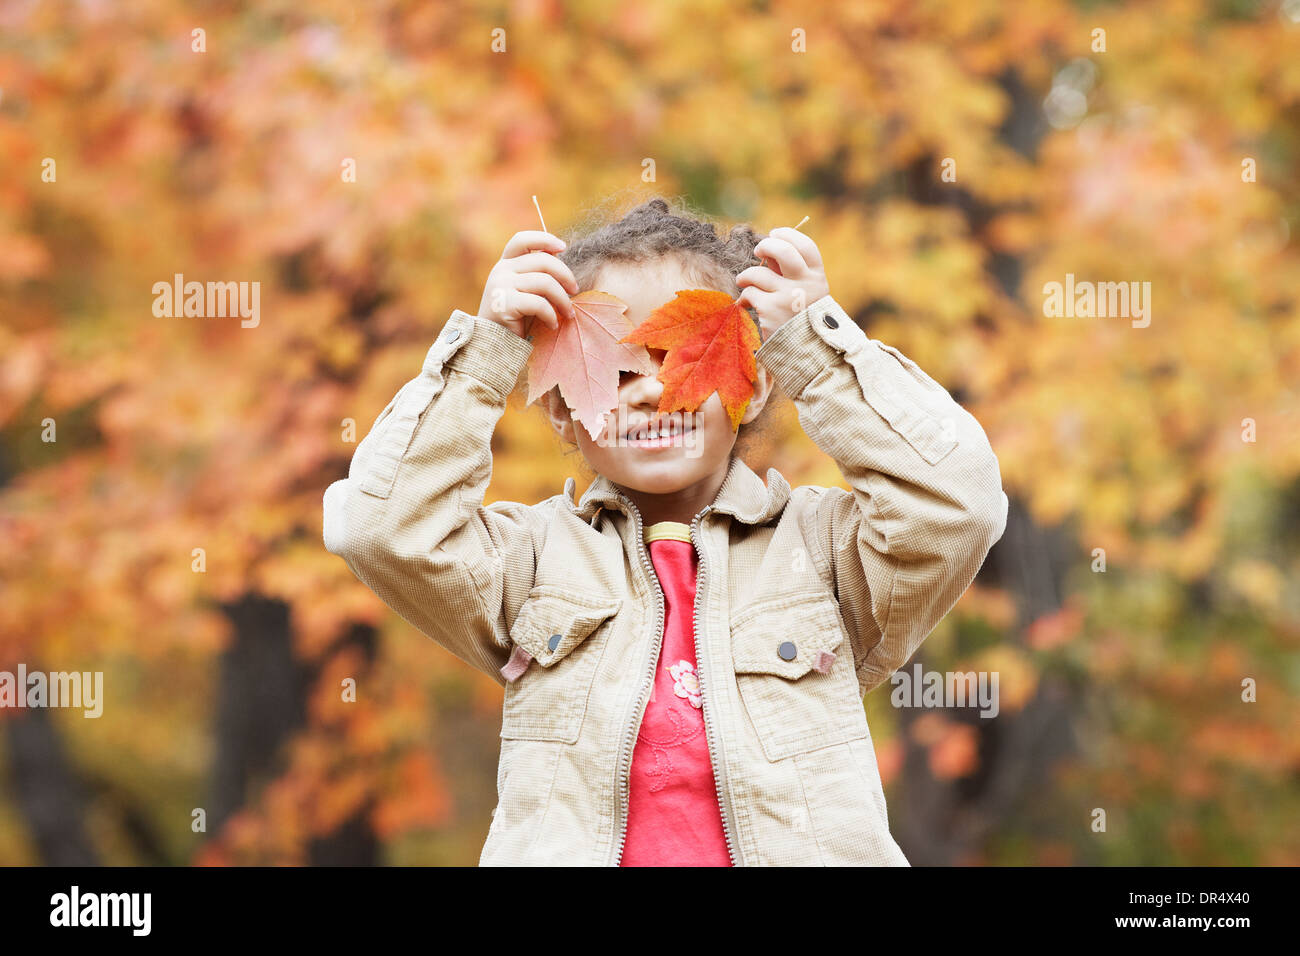 Hispanic girl holding autumn leaves over her eyes Stock Photo